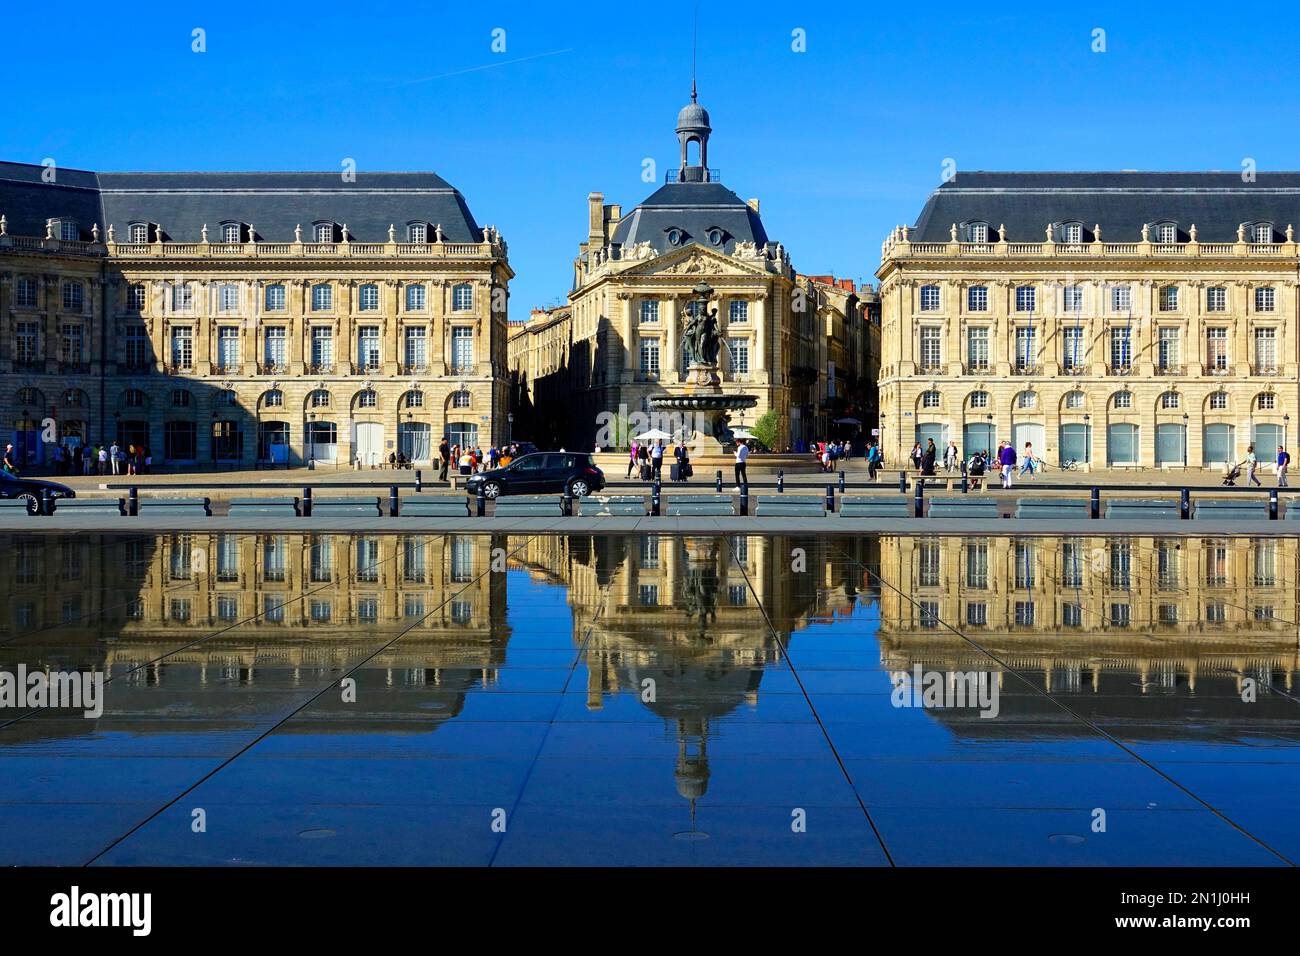 Place de la Bourse Bordeaux est une ville portuaire sur la Garonne dans le département de la Gironde, au sud-ouest de la France. C'est la capitale de la Nouvelle-Aqui Banque D'Images